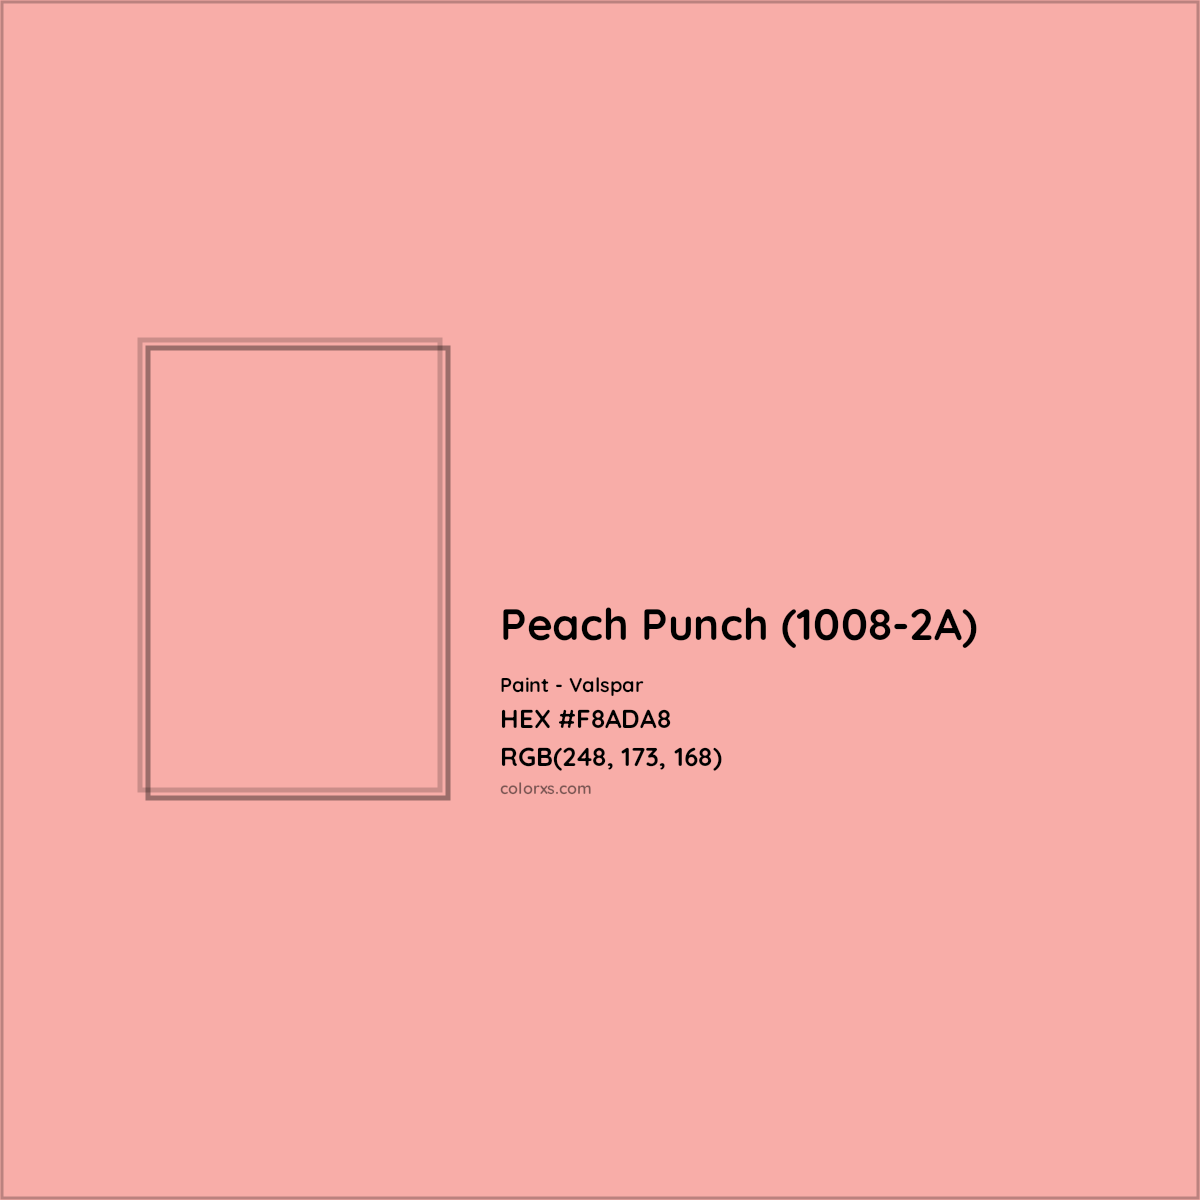 HEX #F8ADA8 Peach Punch (1008-2A) Paint Valspar - Color Code